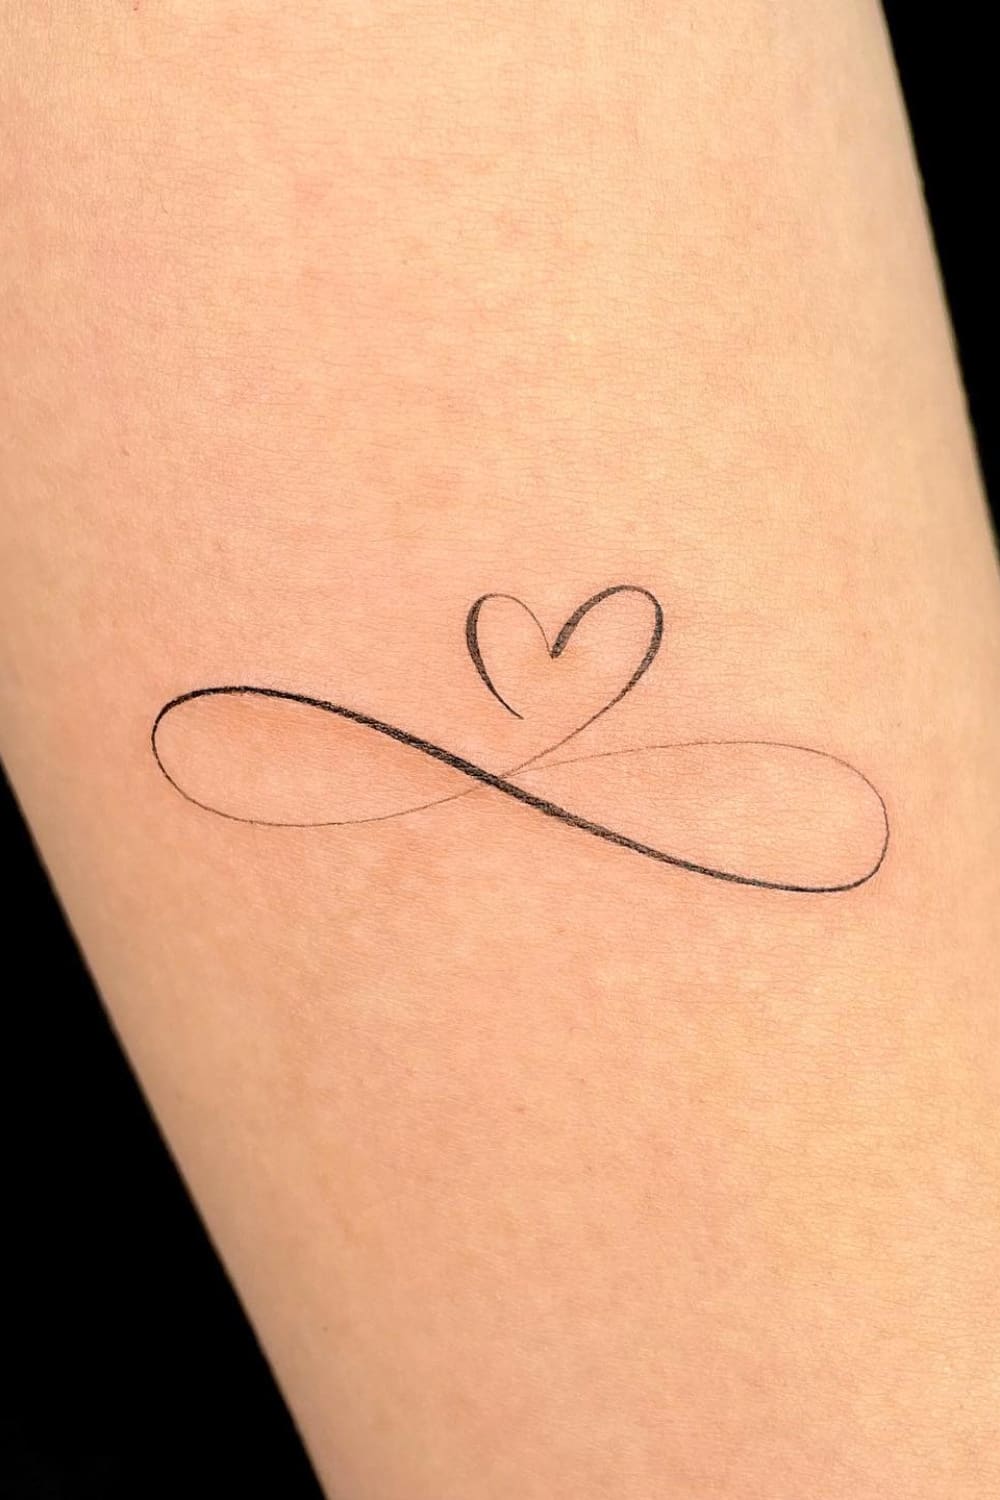 Small Heart Tattoo